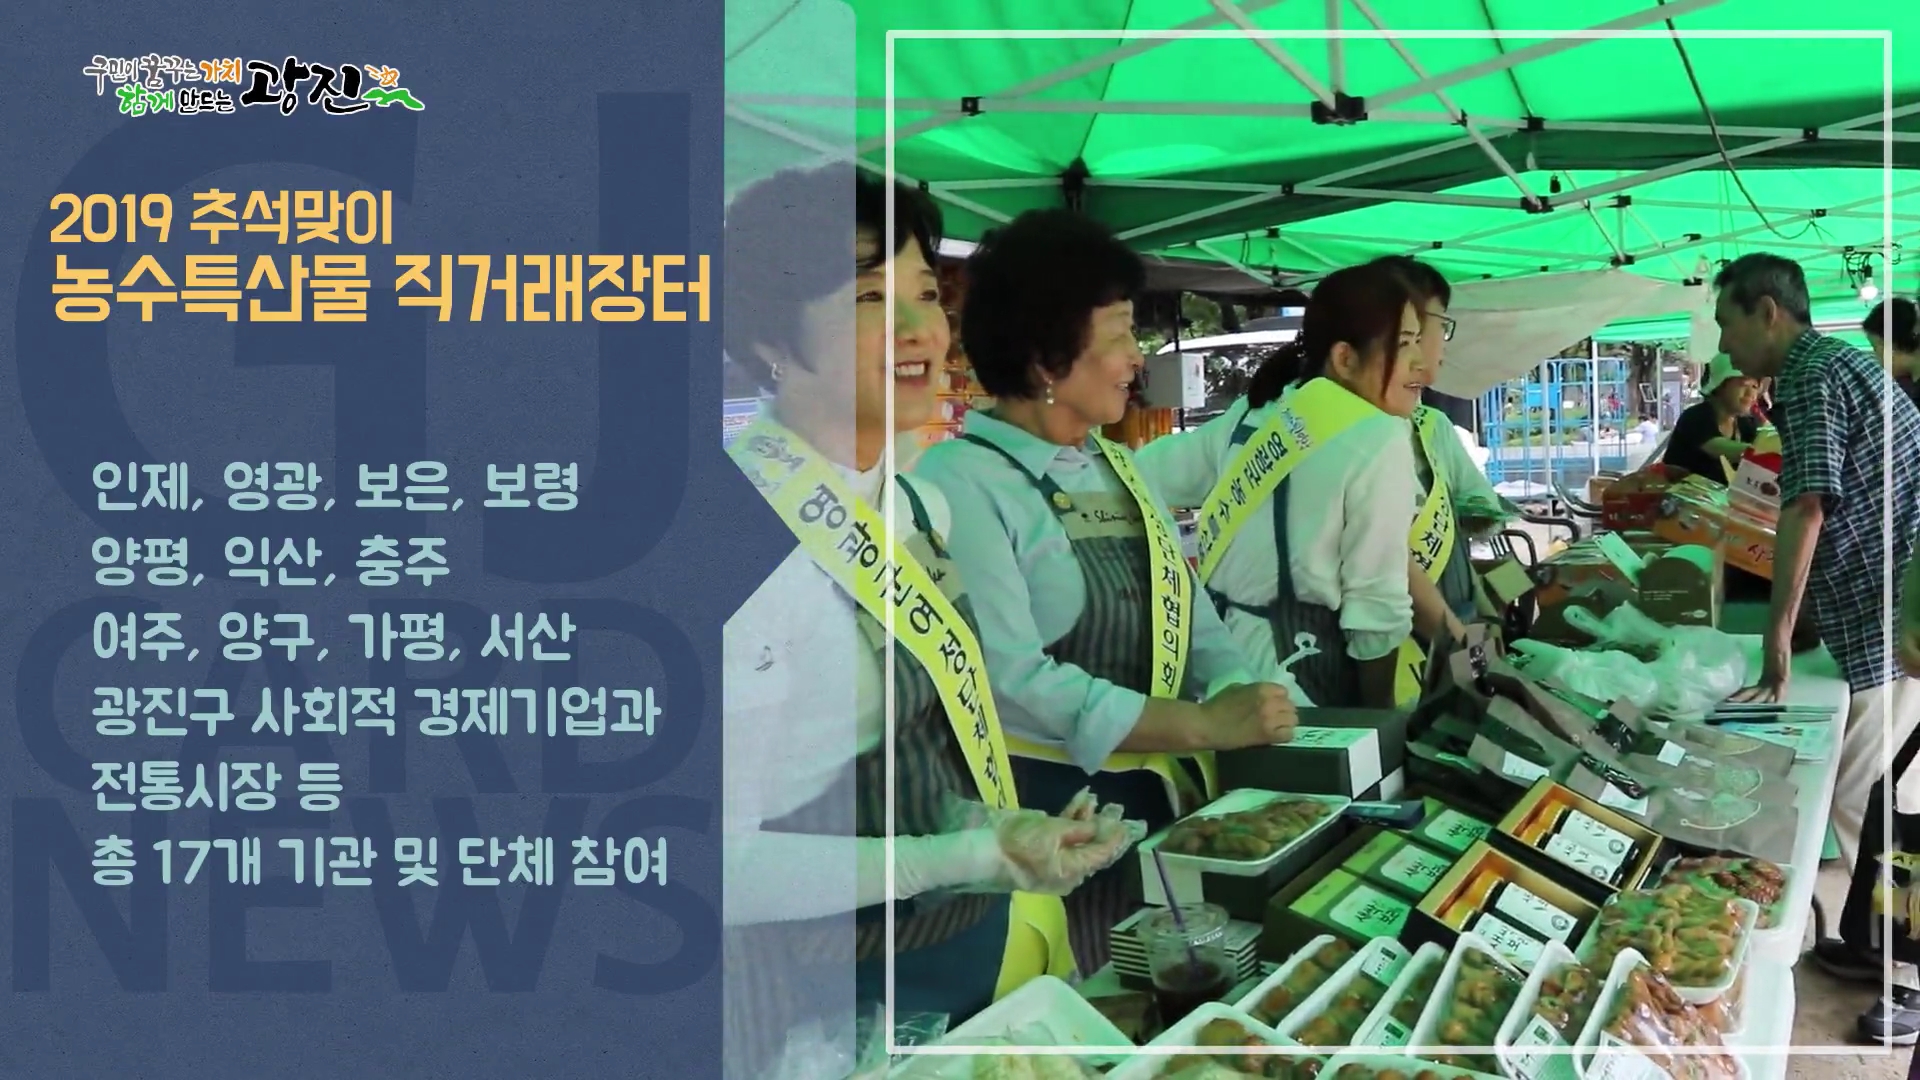 [광진카드뉴스 - 9월 둘째 주] 2019 추석맞이 농수특산물 직거래장터 개설